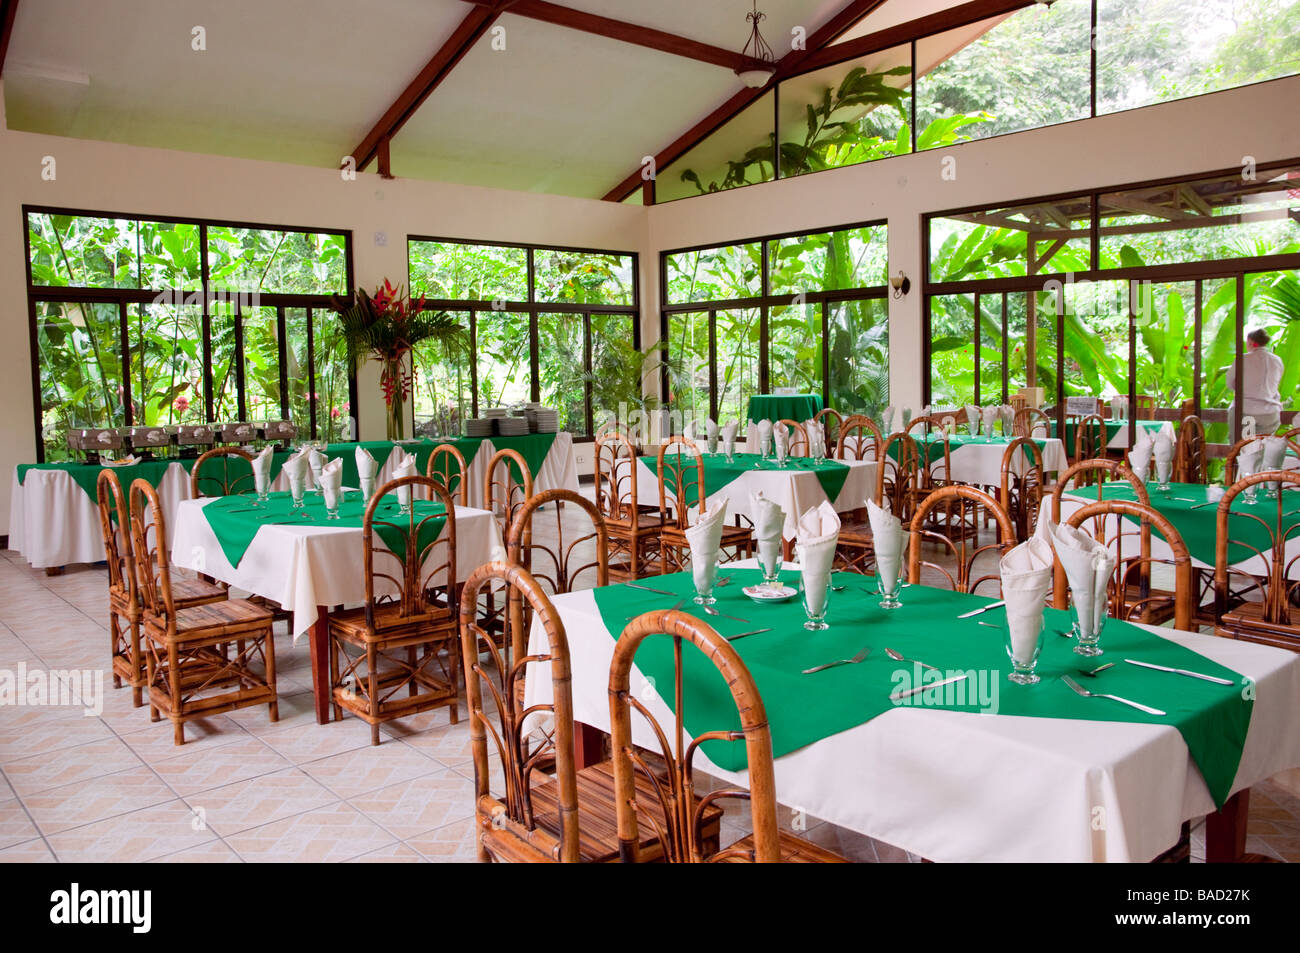 Das Interieur des Restaurants Kapok-Baum im östlichen Costa Rica Mittelamerika Stockfoto